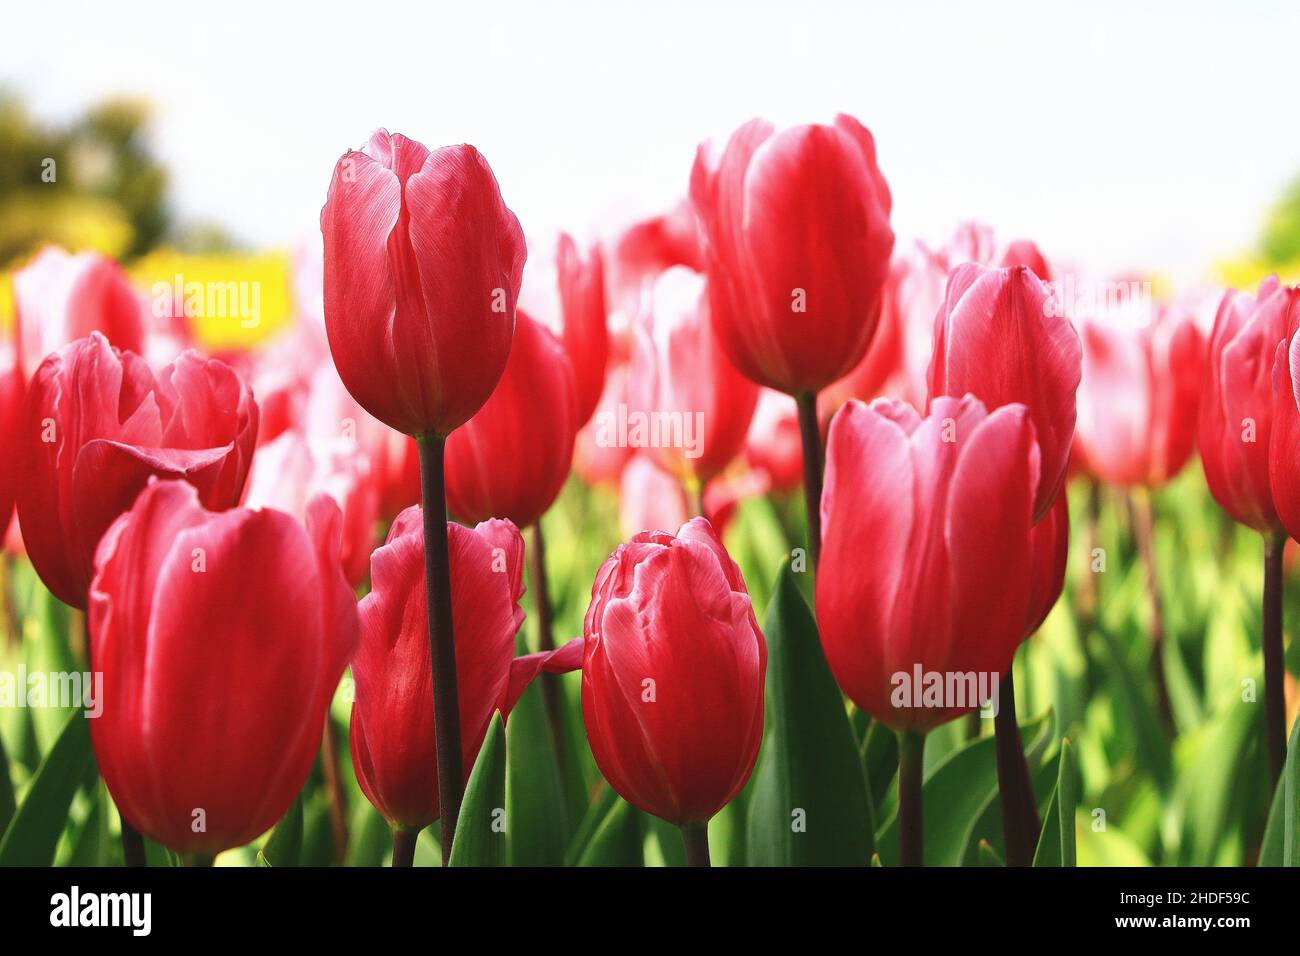 Vista incredibile dei fiori colorati di tulipano in fiore, primo piano dei bellissimi fiori rossi di tulipano in fiore nel giardino Foto Stock